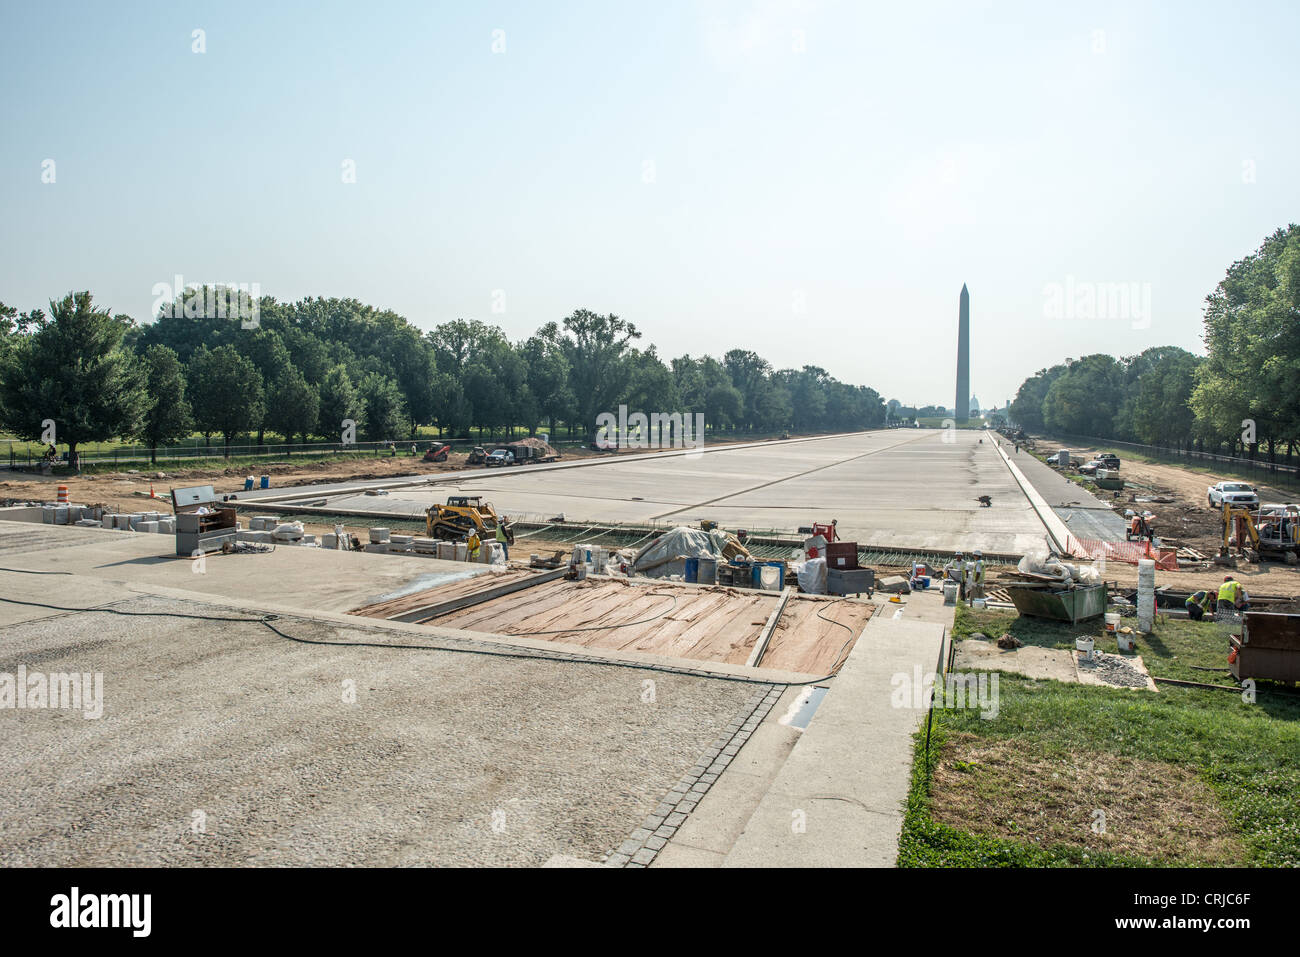 WASHINGTON DC, USA - Reflecting Pool renoviert. Bau als Teil der Renovierung des reflektierenden Pool auf der National Mall in Washington DC Stockfoto